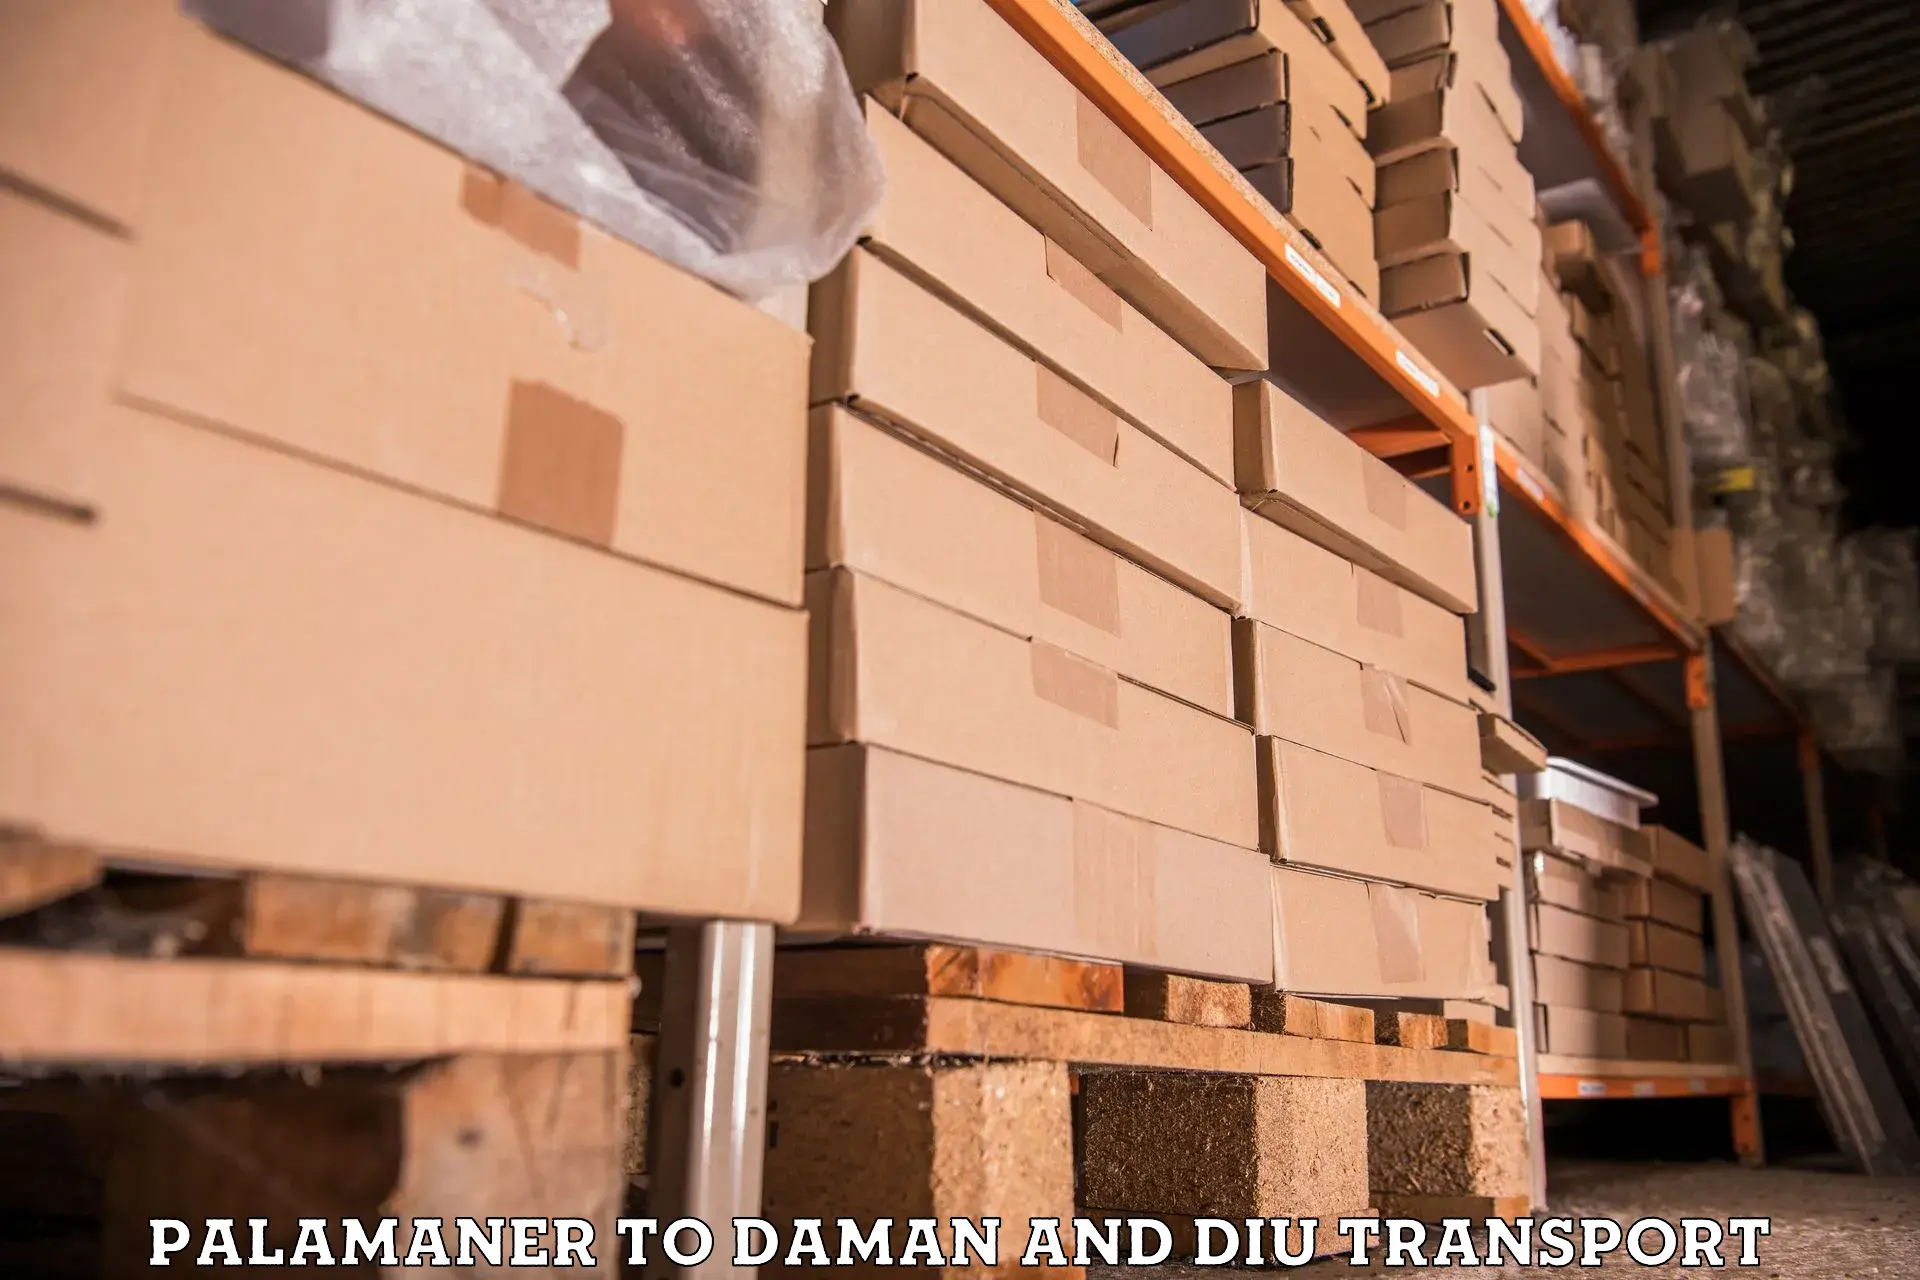 Logistics transportation services Palamaner to Diu